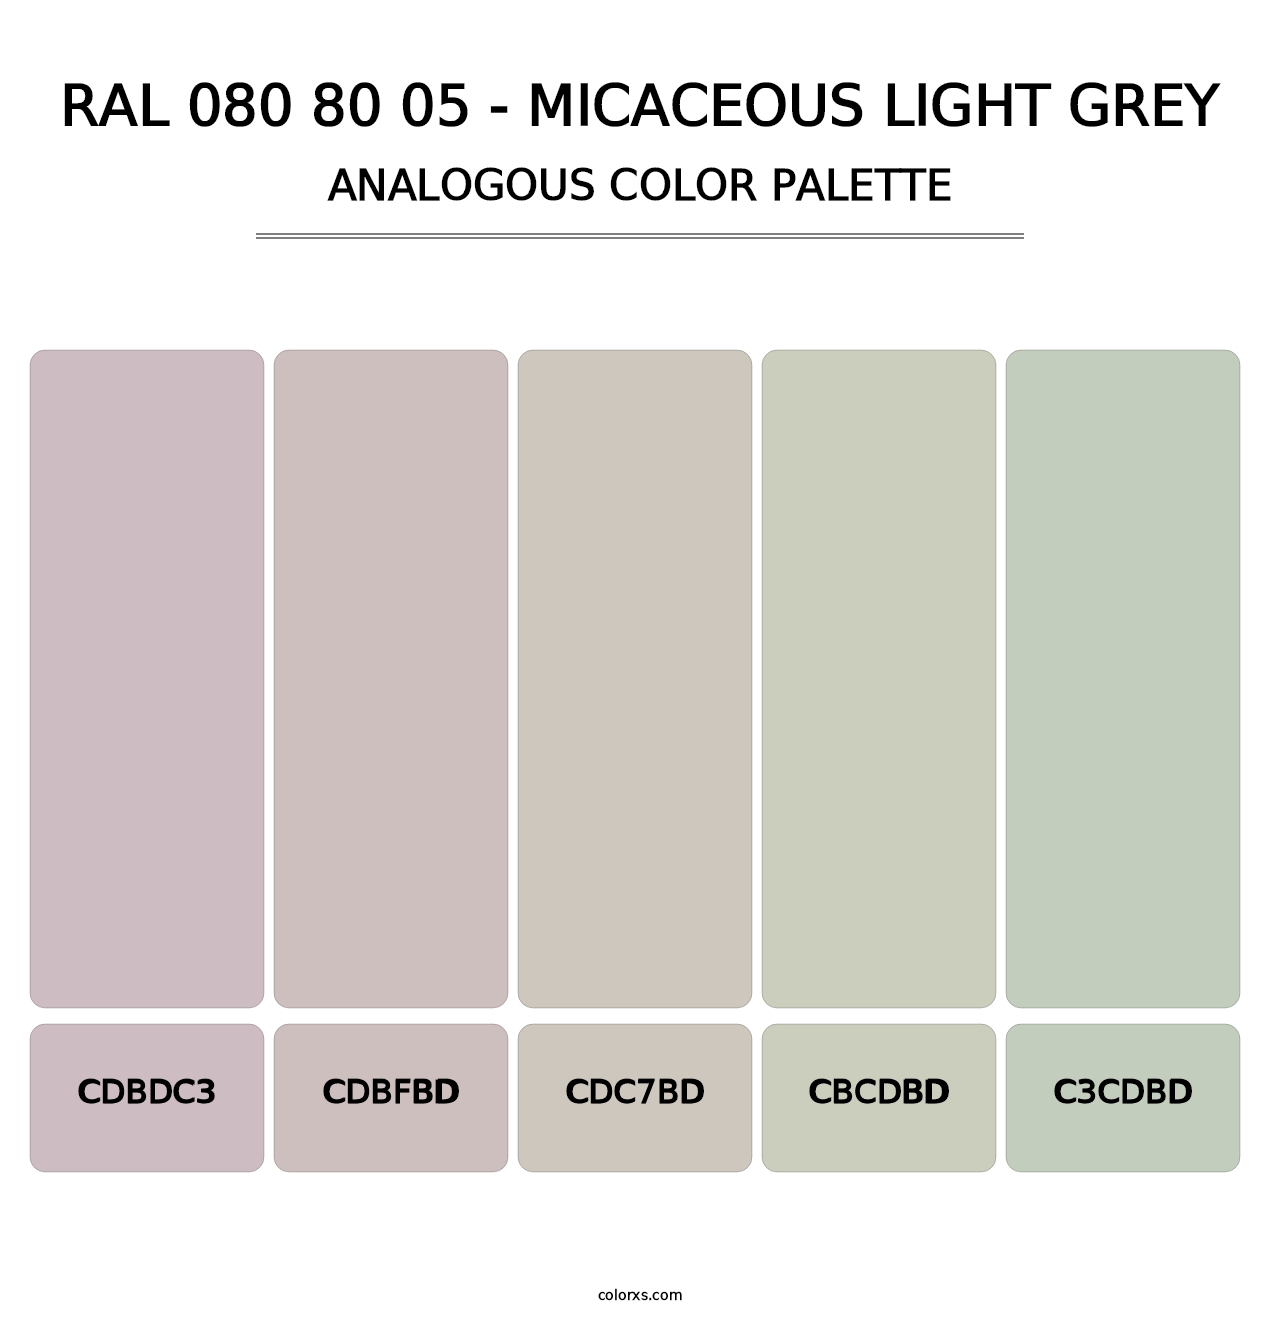 RAL 080 80 05 - Micaceous Light Grey - Analogous Color Palette